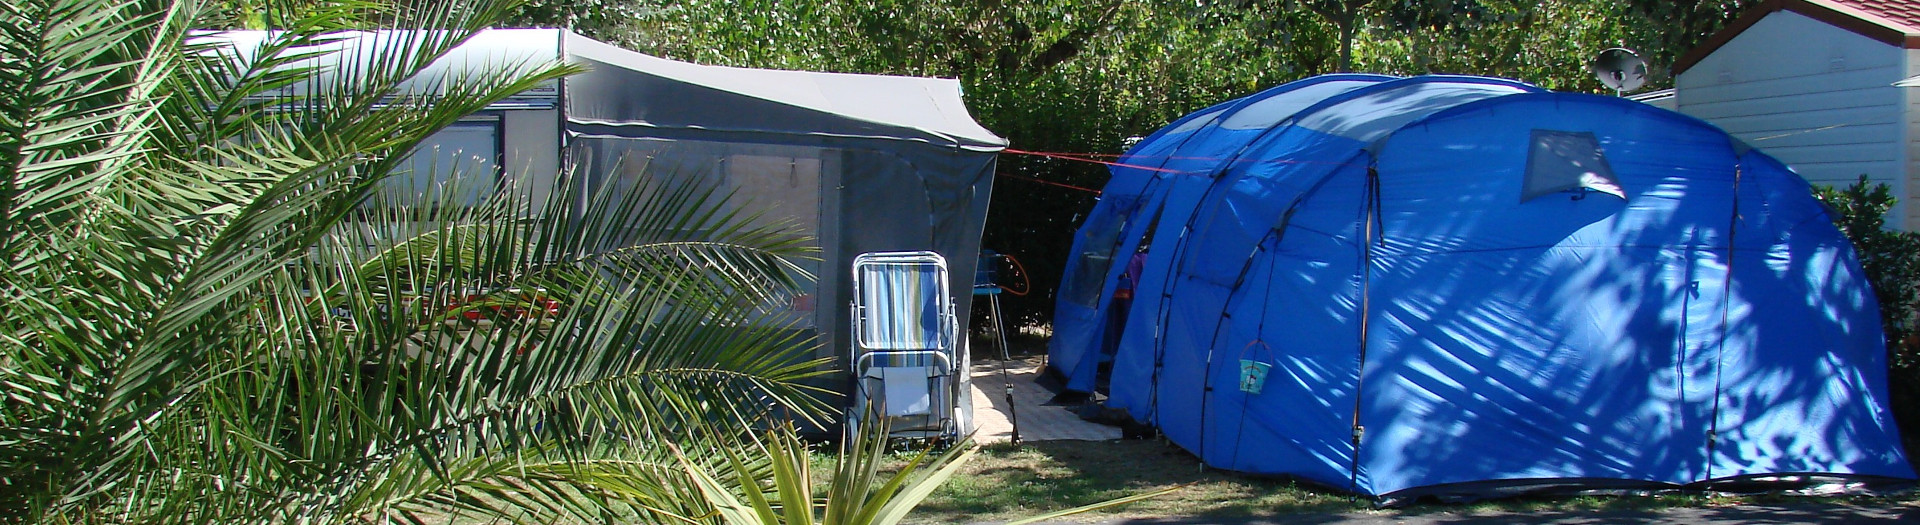 Piazzola Extrabox Per Camper In Campeggio Rubicone Riviera Romagnola